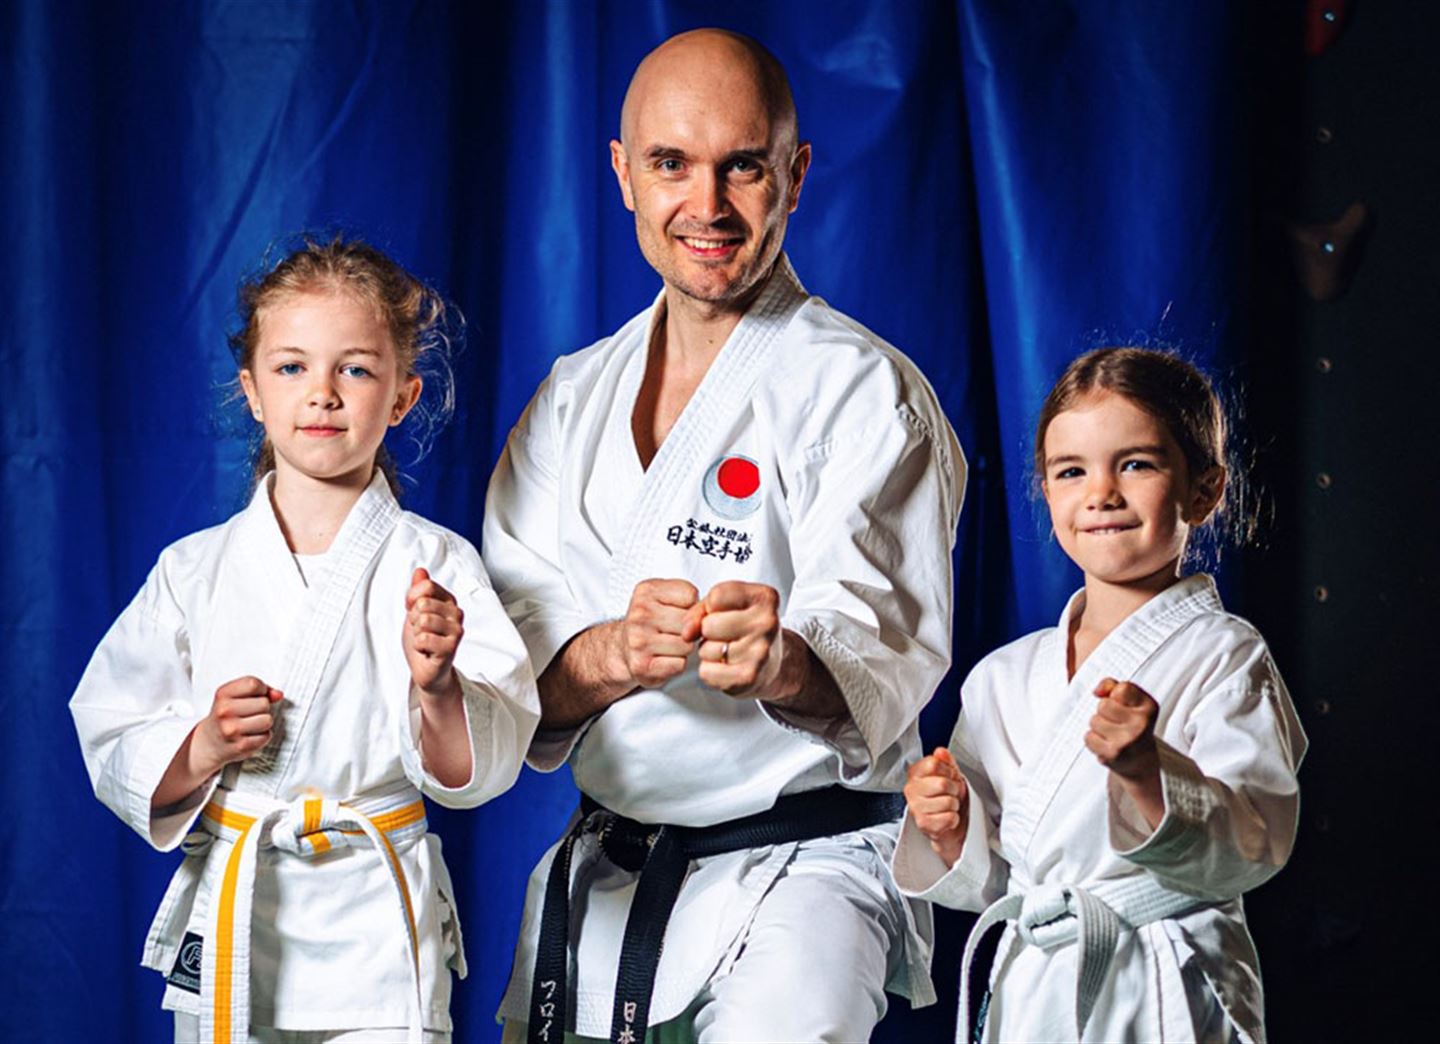 Mann og to jenter i karateutstyr.